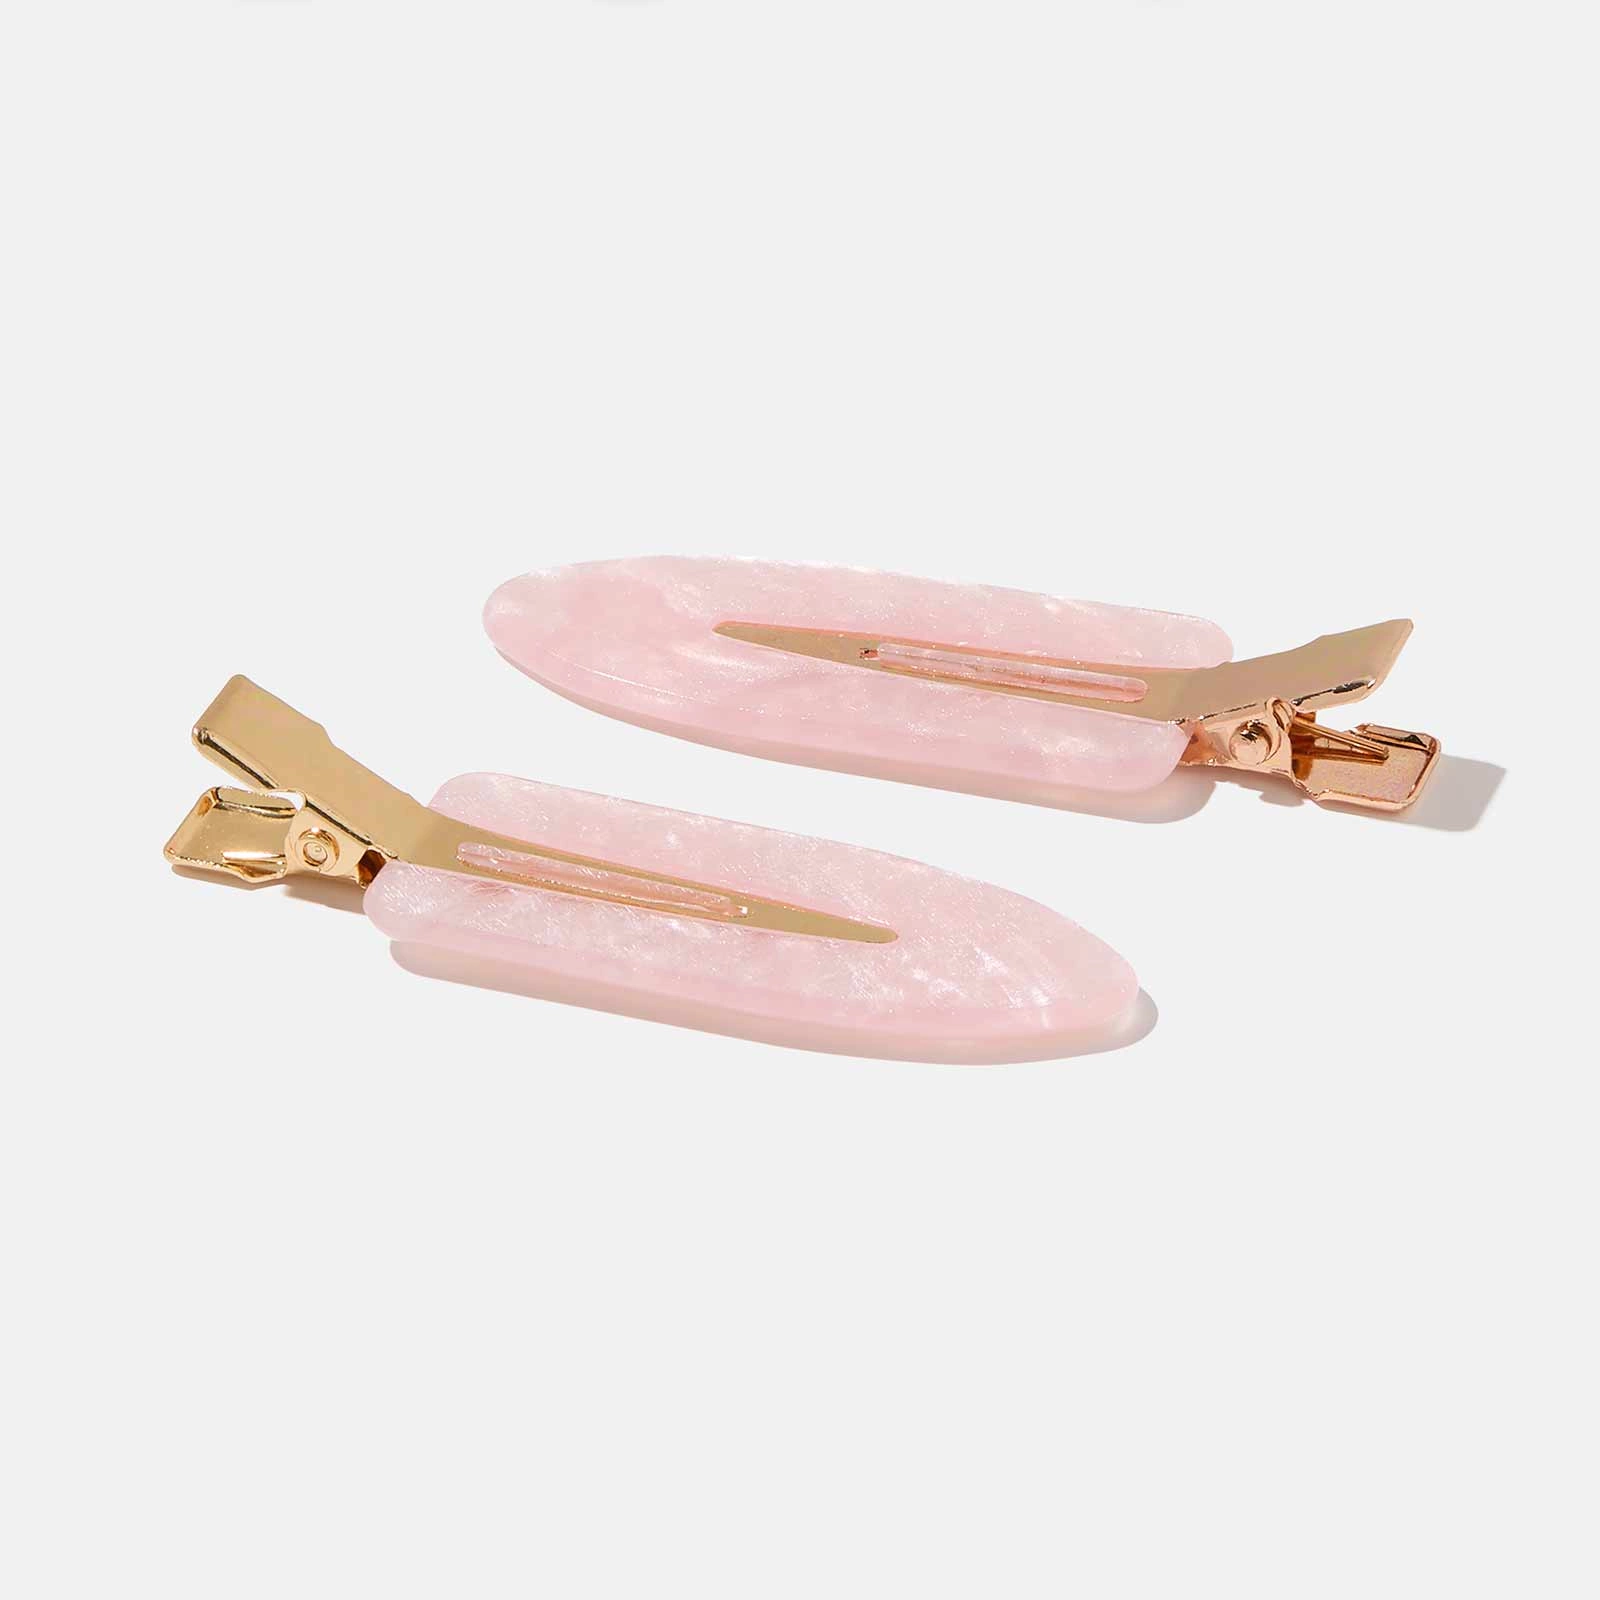 Guldfärgade/rosa hårspännen - 2-pack, 6cm